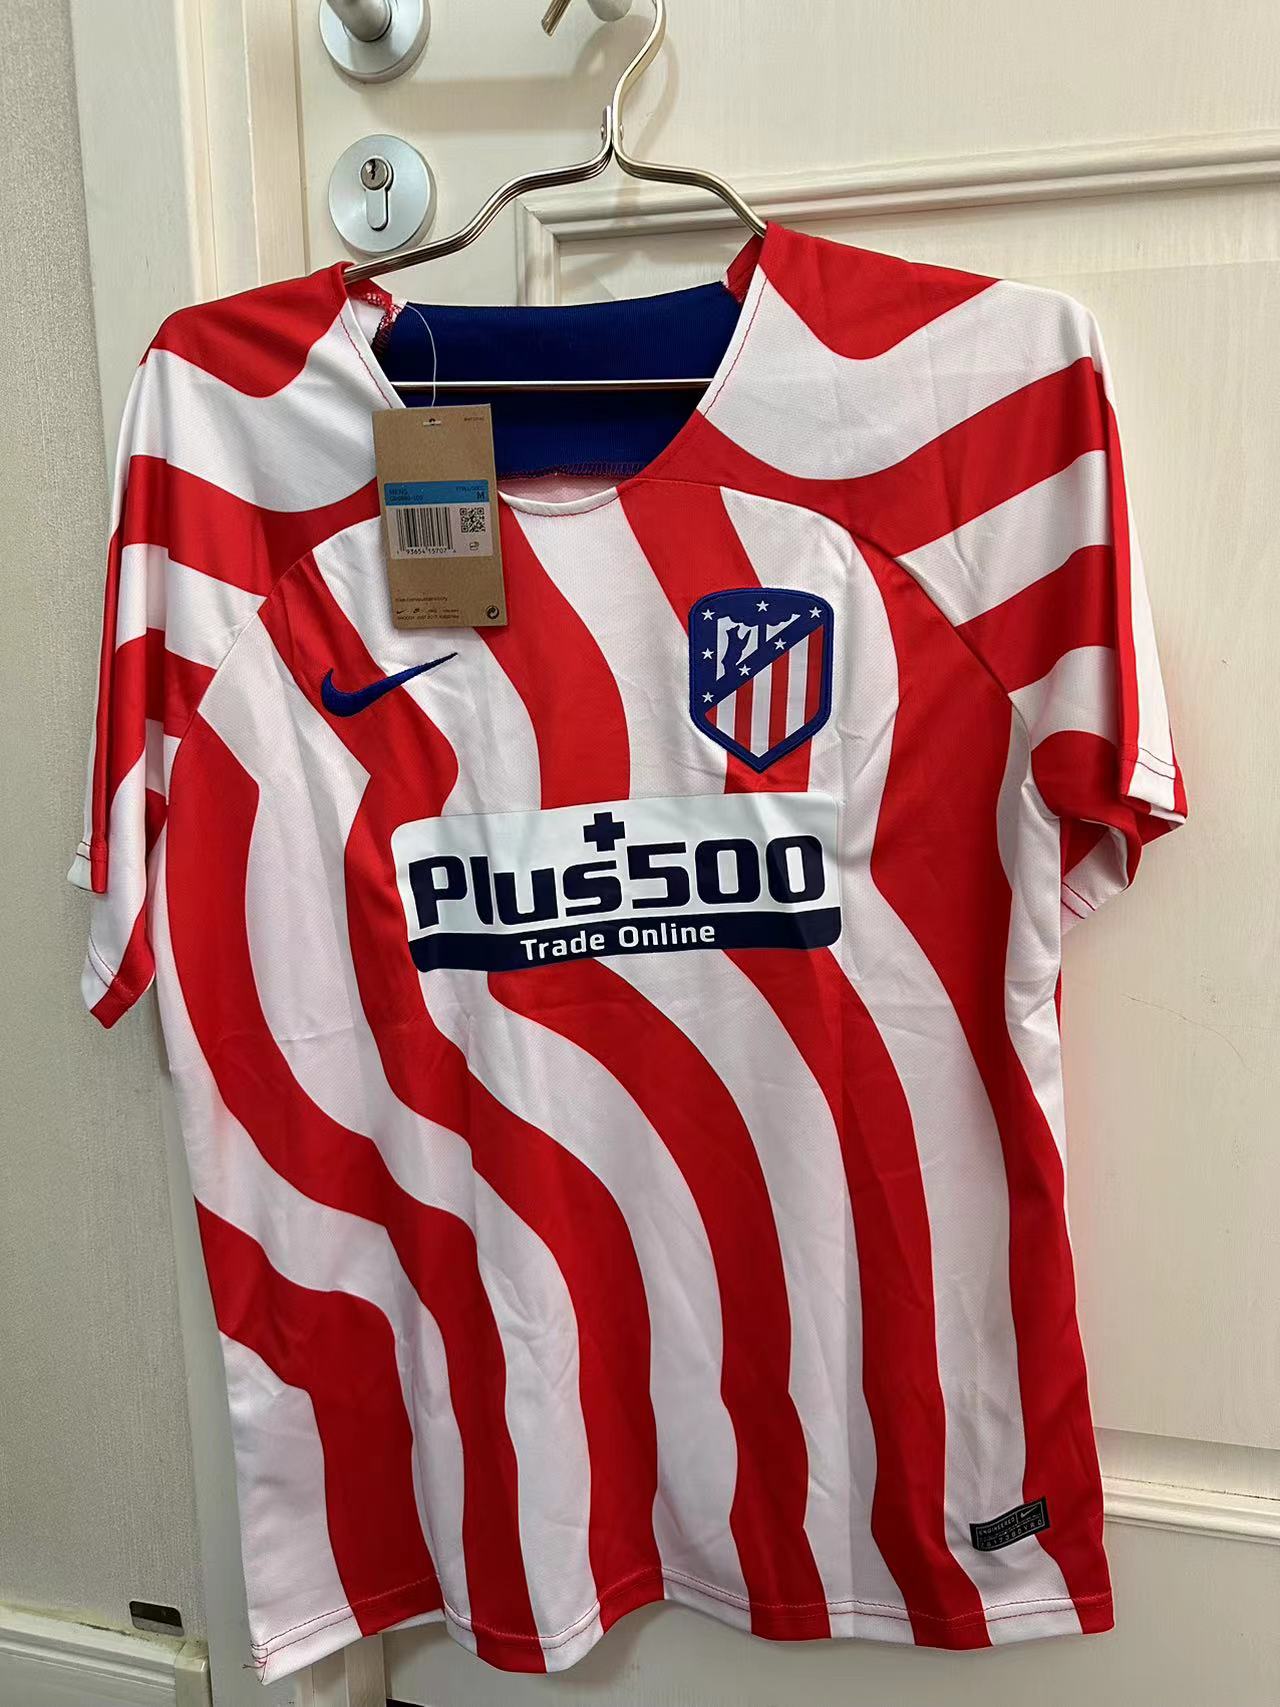 Camisetas De Fútbol Baratas - Talla L - 53 [Bratas053] - €9.90 